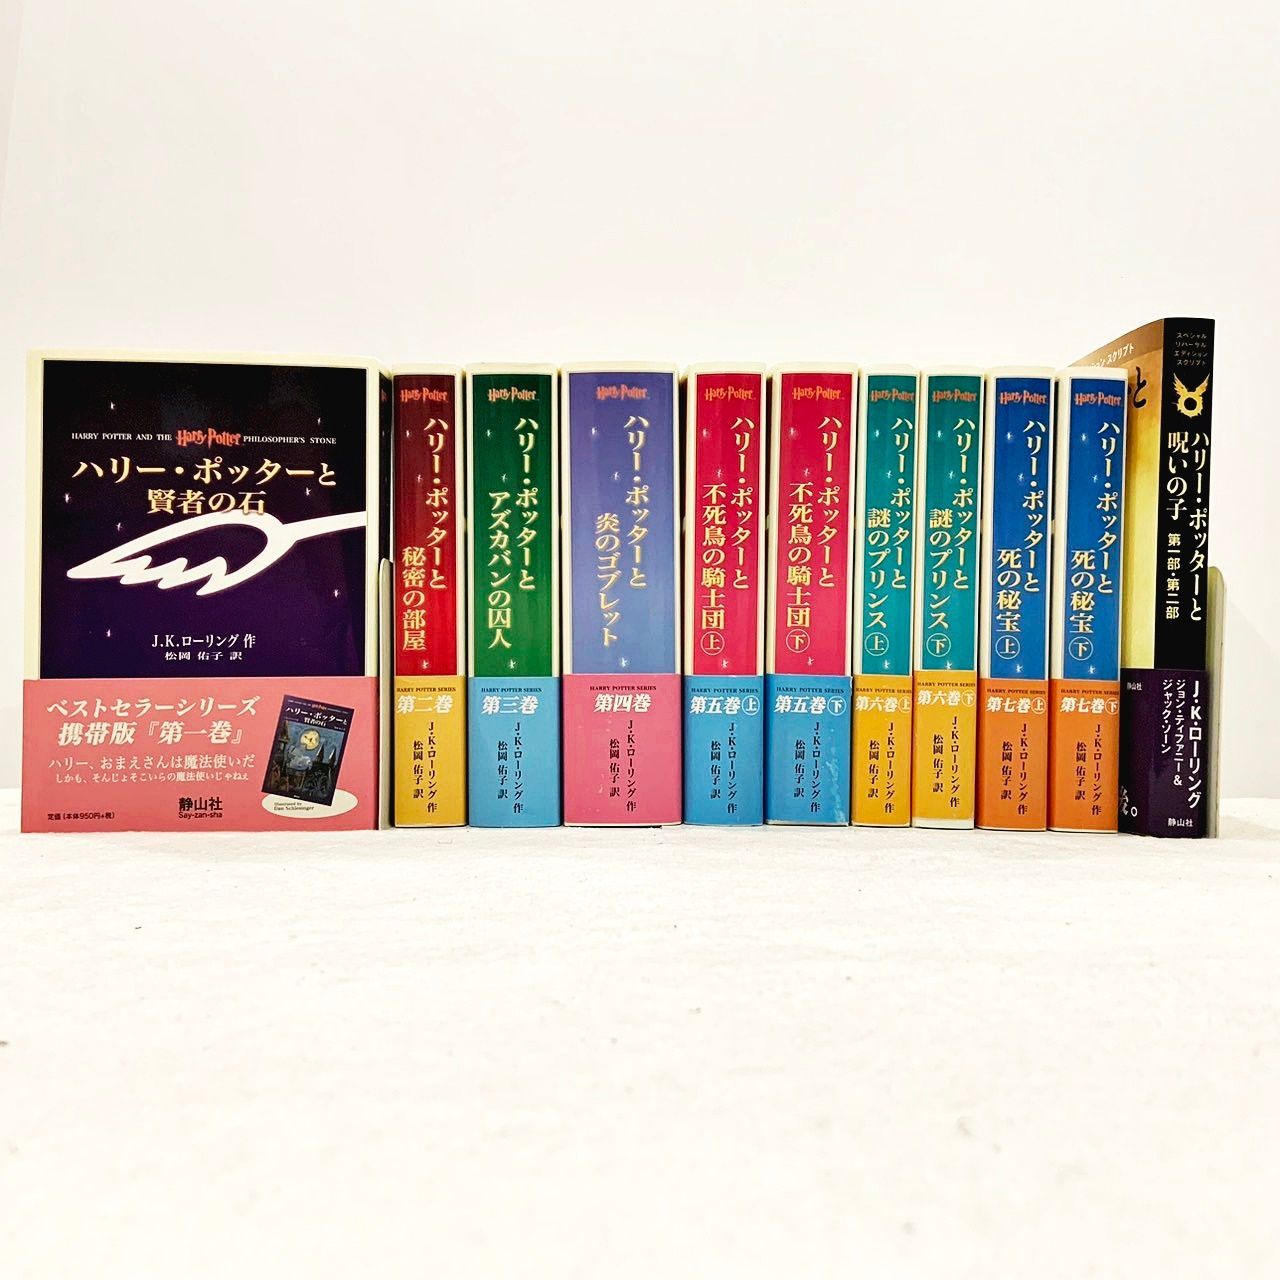 ハリー・ポッター 携帯版 全7巻 (10冊) 完結セット - メルカリ